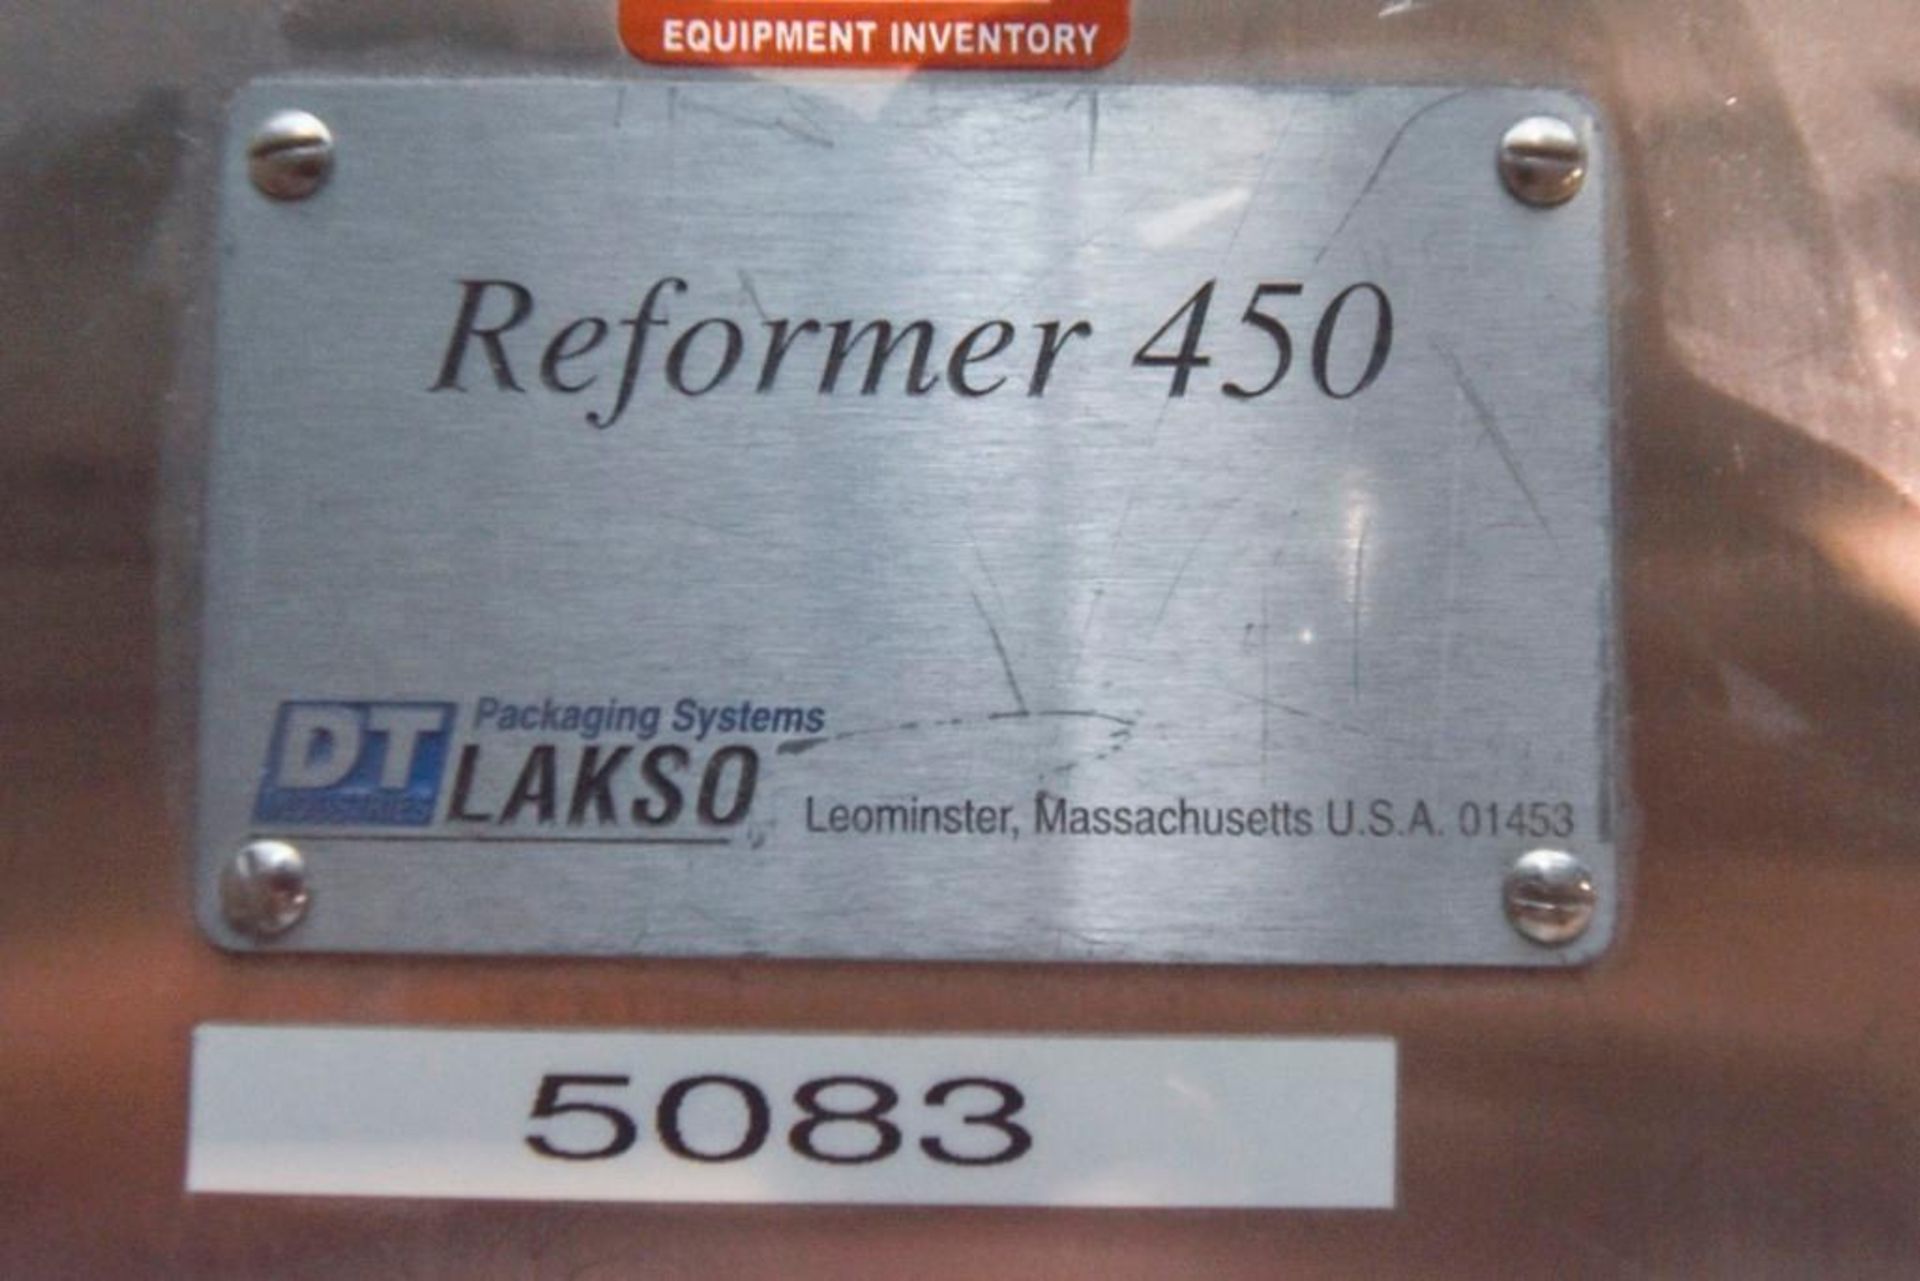 DT Lakso Slat Filler, Reformer 450 - Image 5 of 20